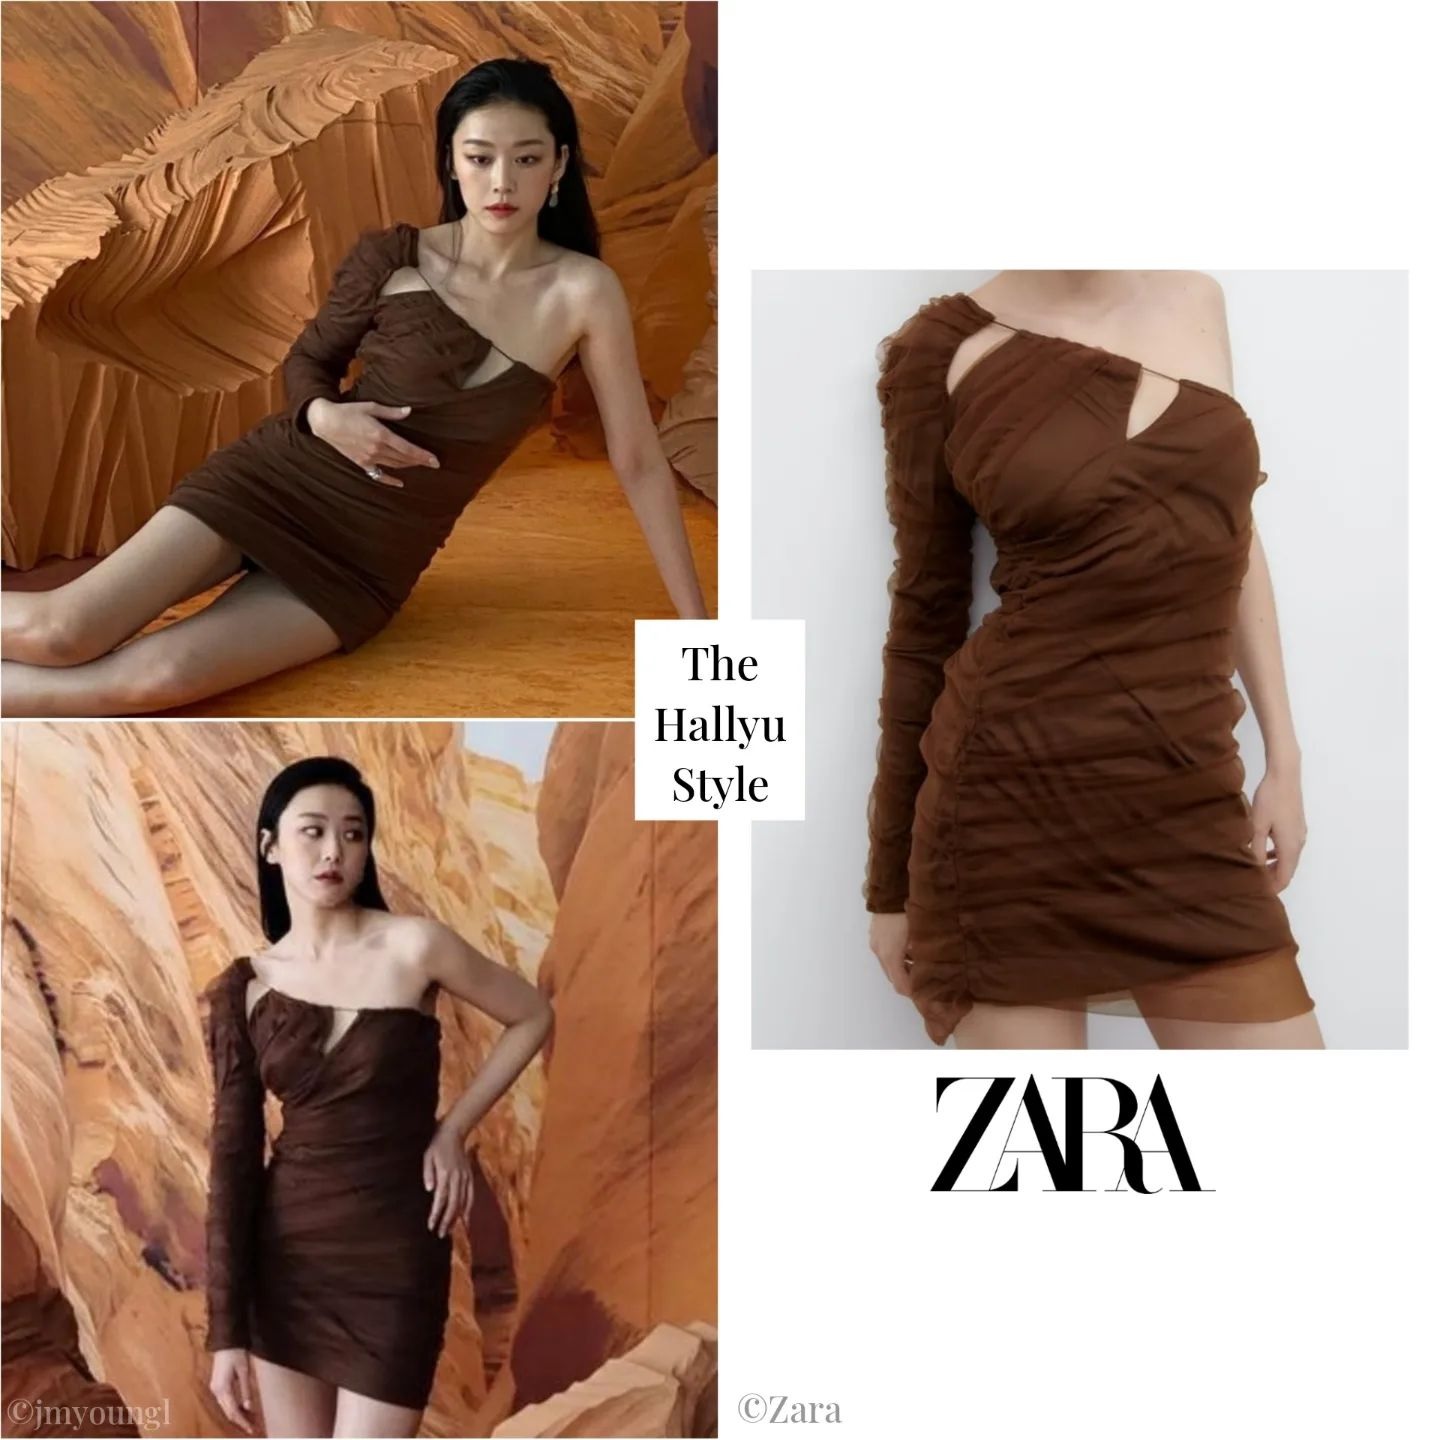 Đồ Zara, H&M sao Hàn vừa diện: Toàn váy áo xinh yêu, hợp với mùa Hè - Ảnh 3.